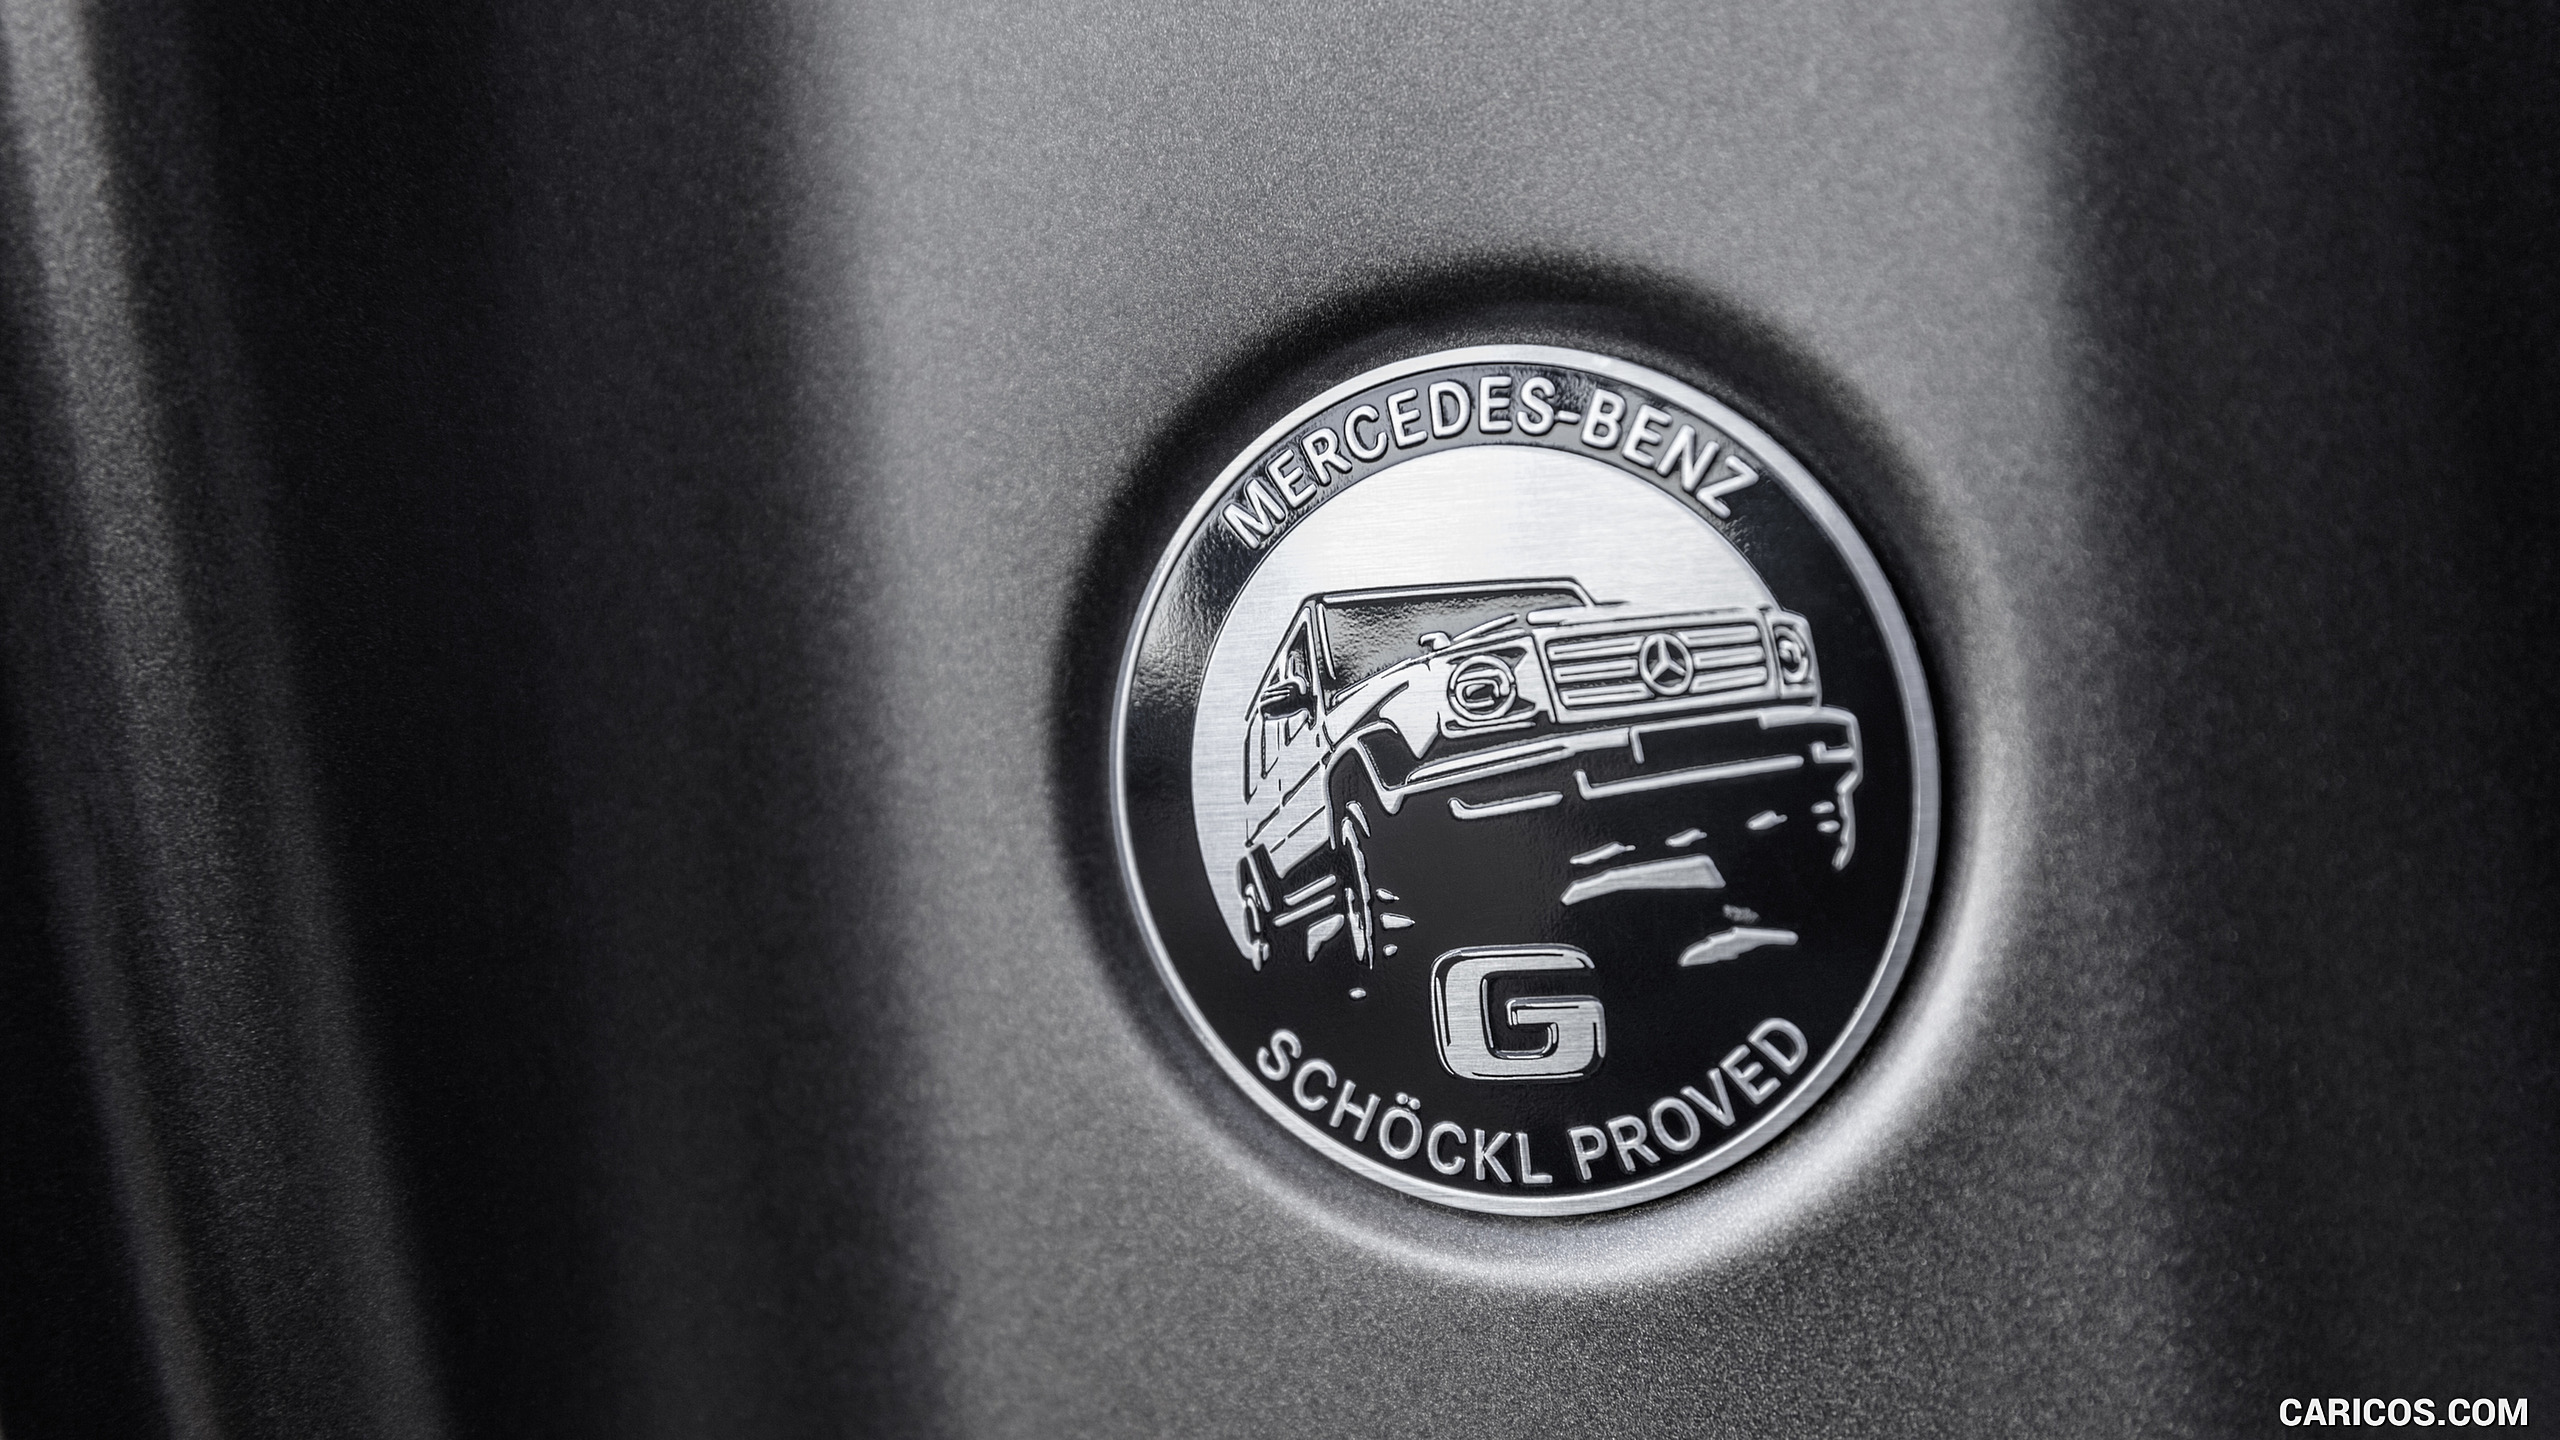 2019 Mercedes-Benz G-Class G550 - Detail, #38 of 397